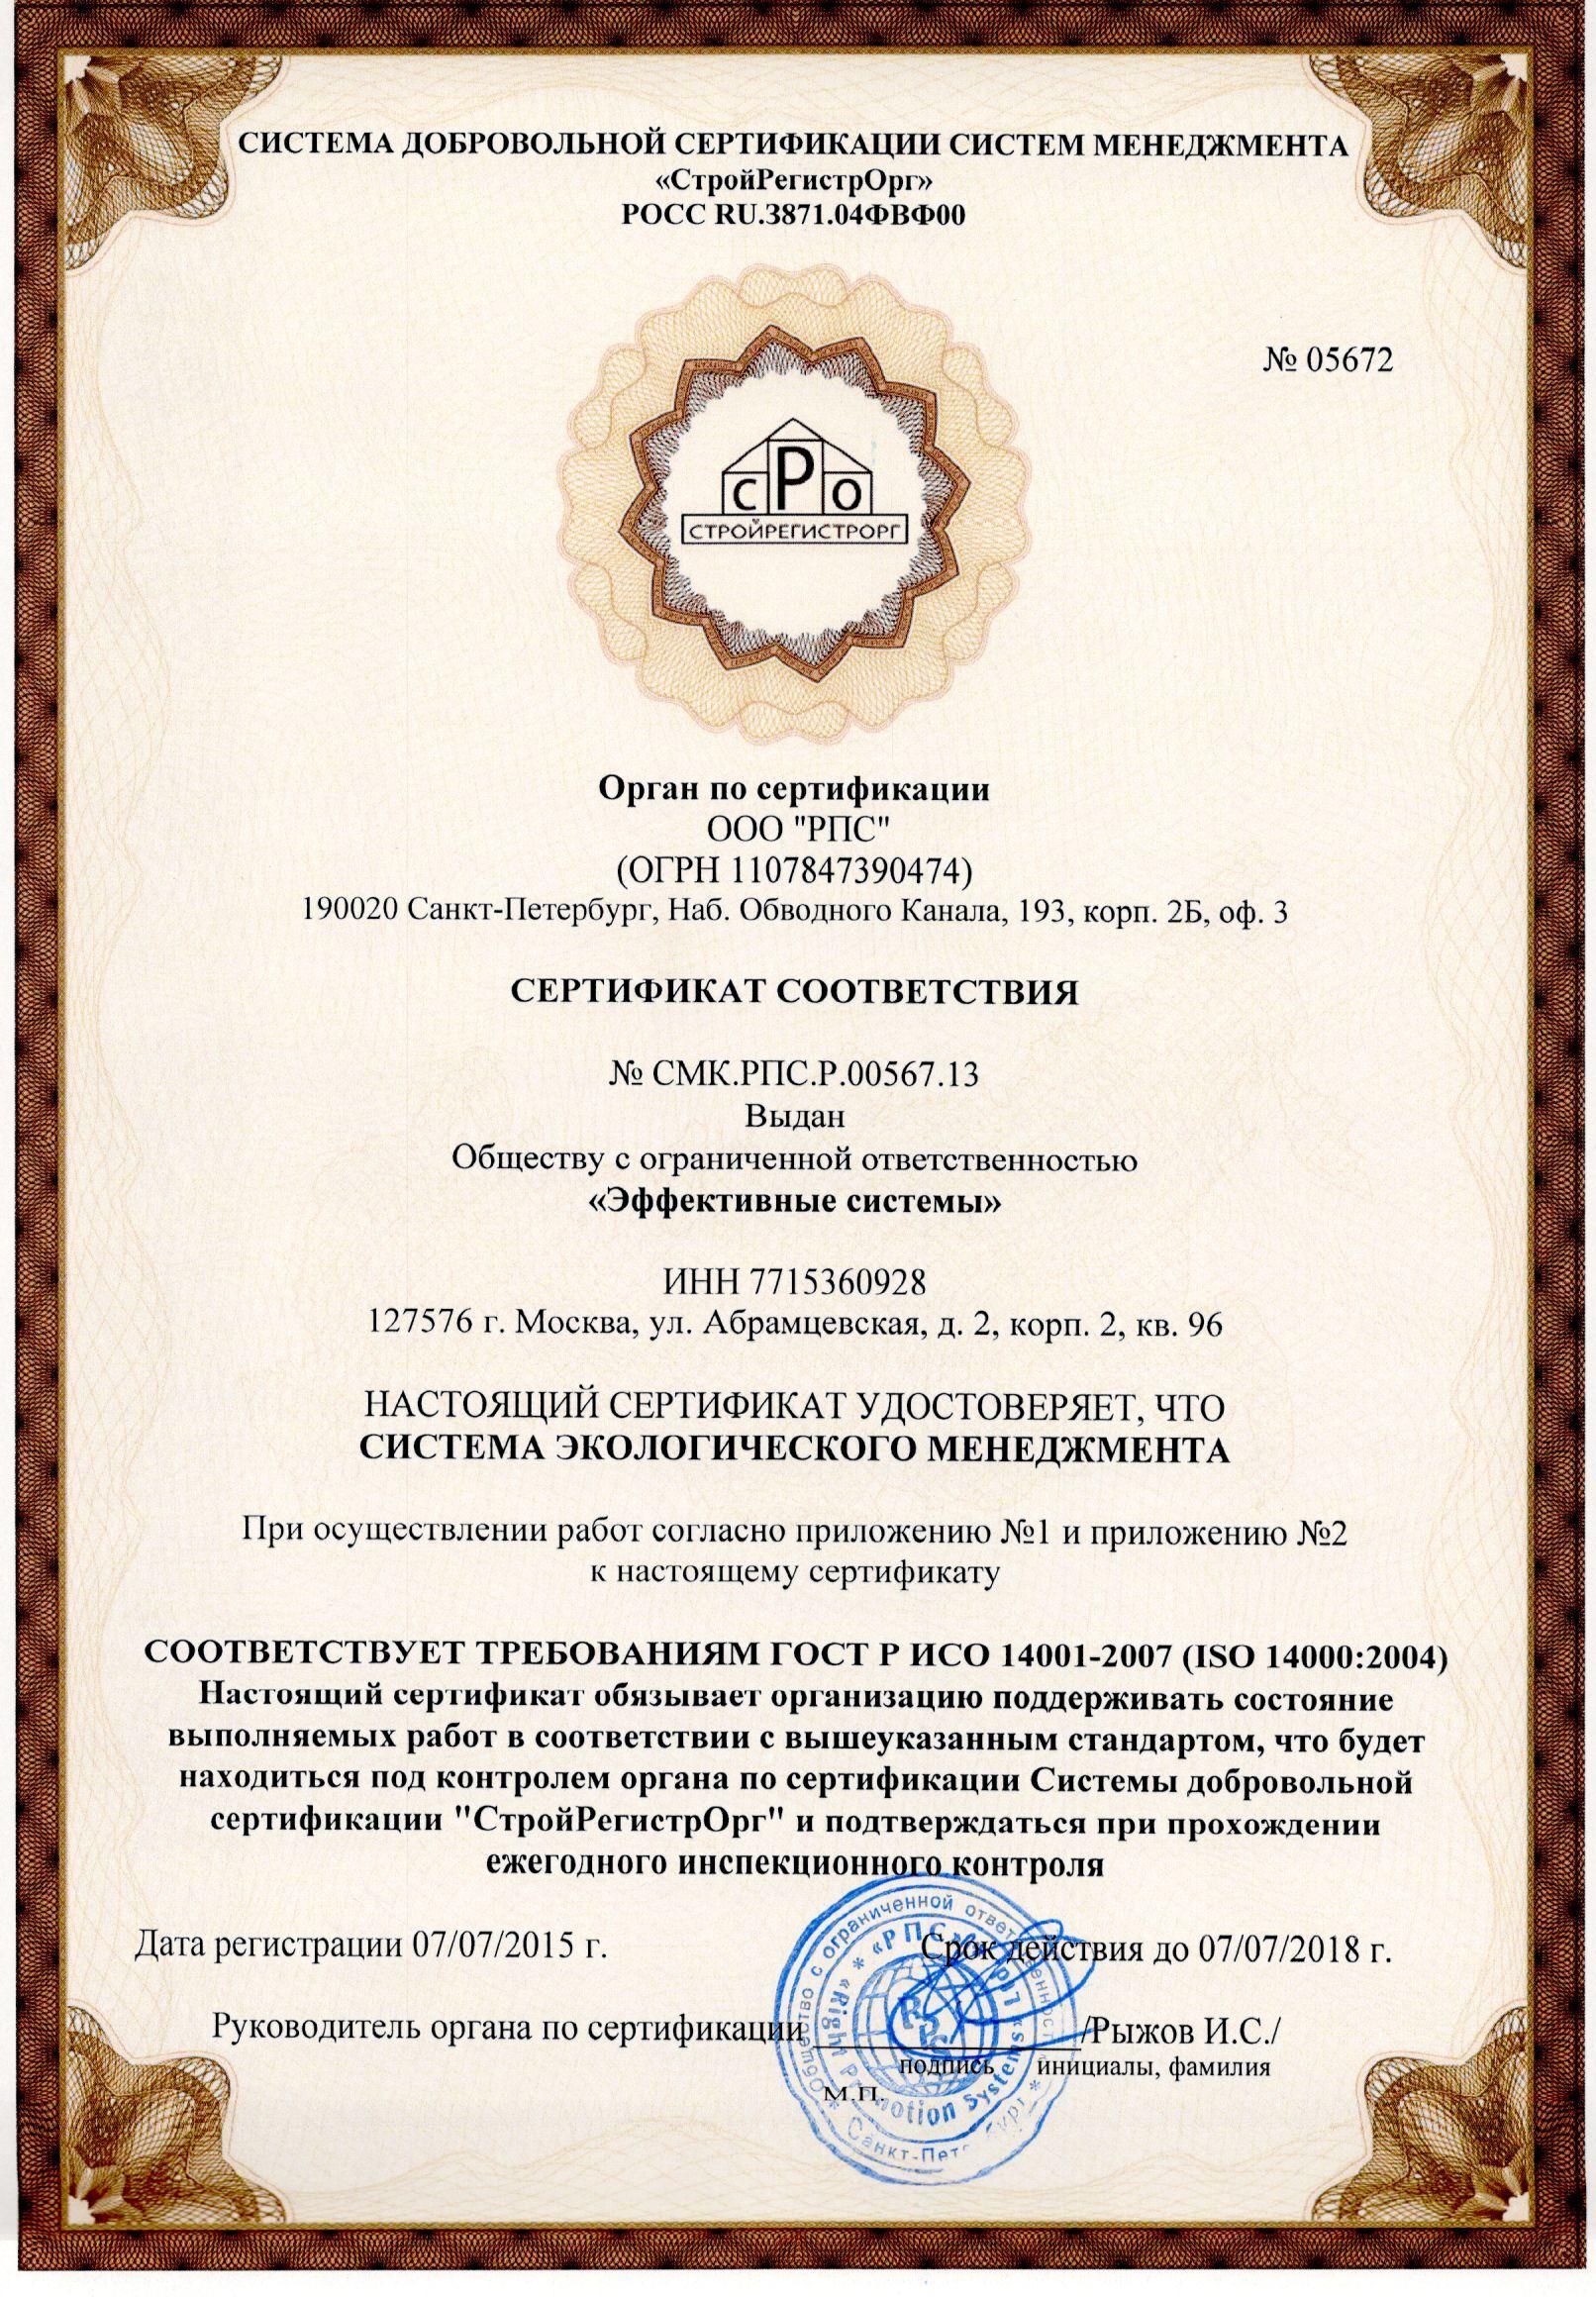 Сертификат системы экологического менеджмента ГОСТ Р ИСО 14001-2007 (ISO 14000:2004)